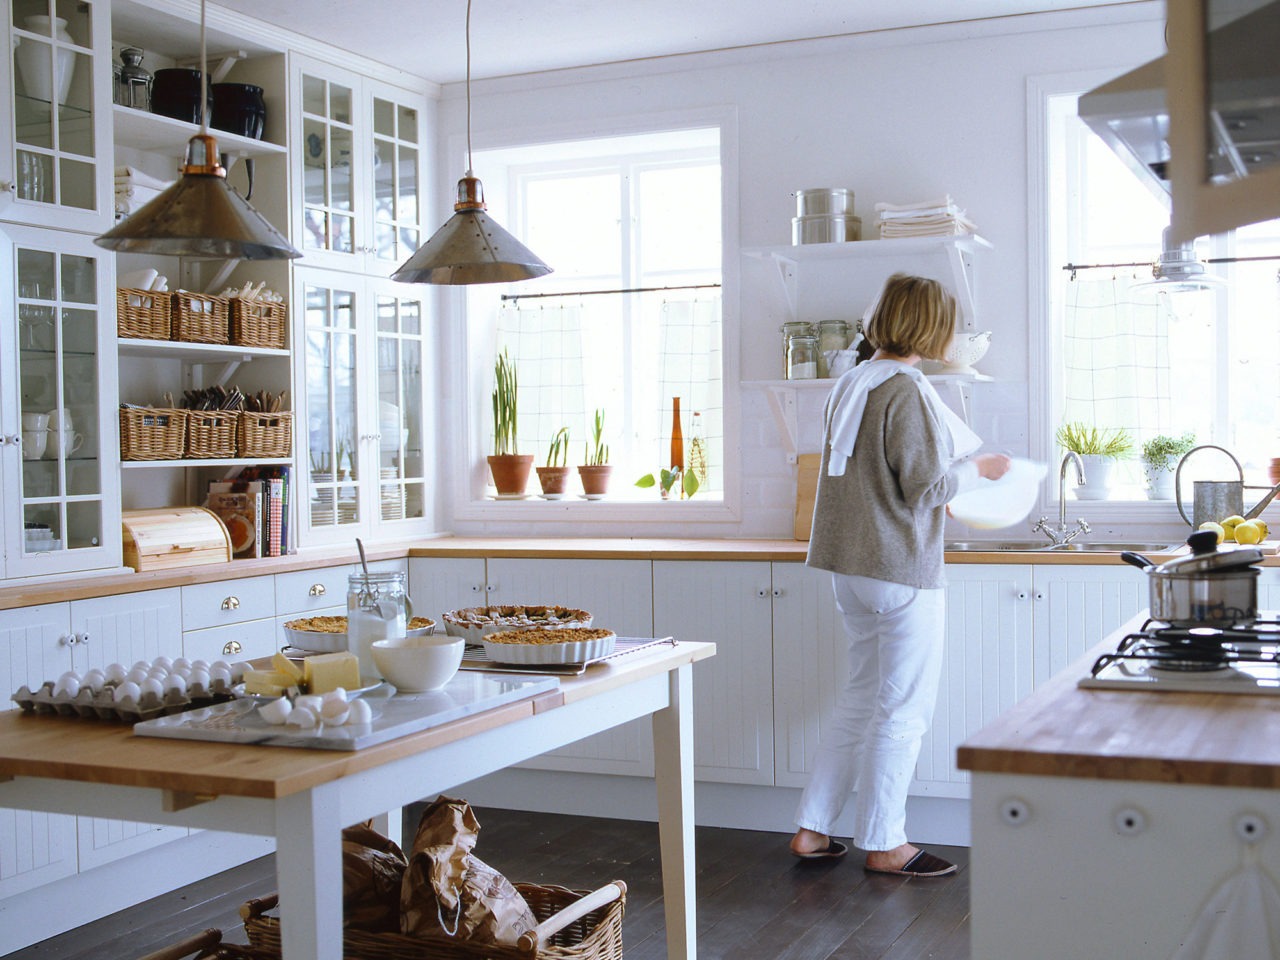 Ett kök med vita skåp och arbetsbänk i ljust trä. En kvinna står vid vasken, på ett matbord står nybakade pajer.